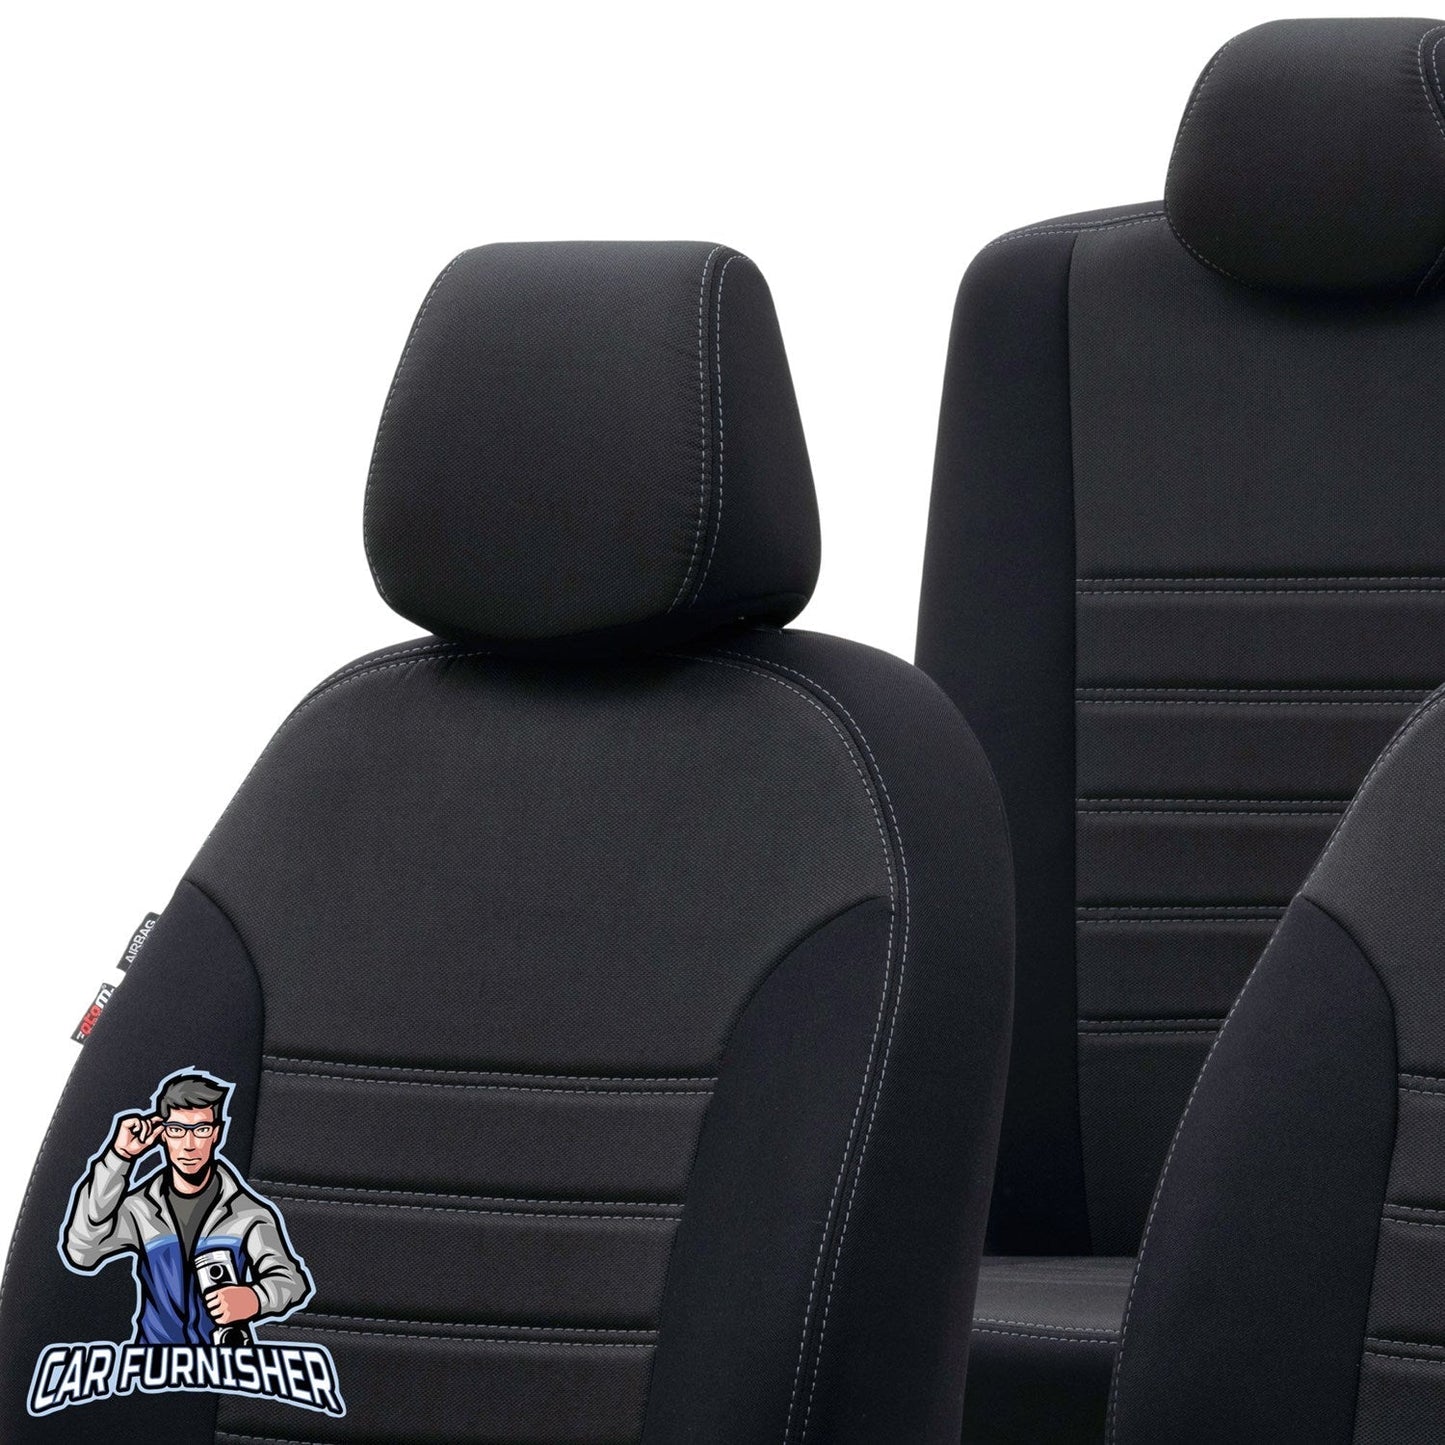 Bmw X1 Seat Cover Original Jacquard Design Black Jacquard Fabric